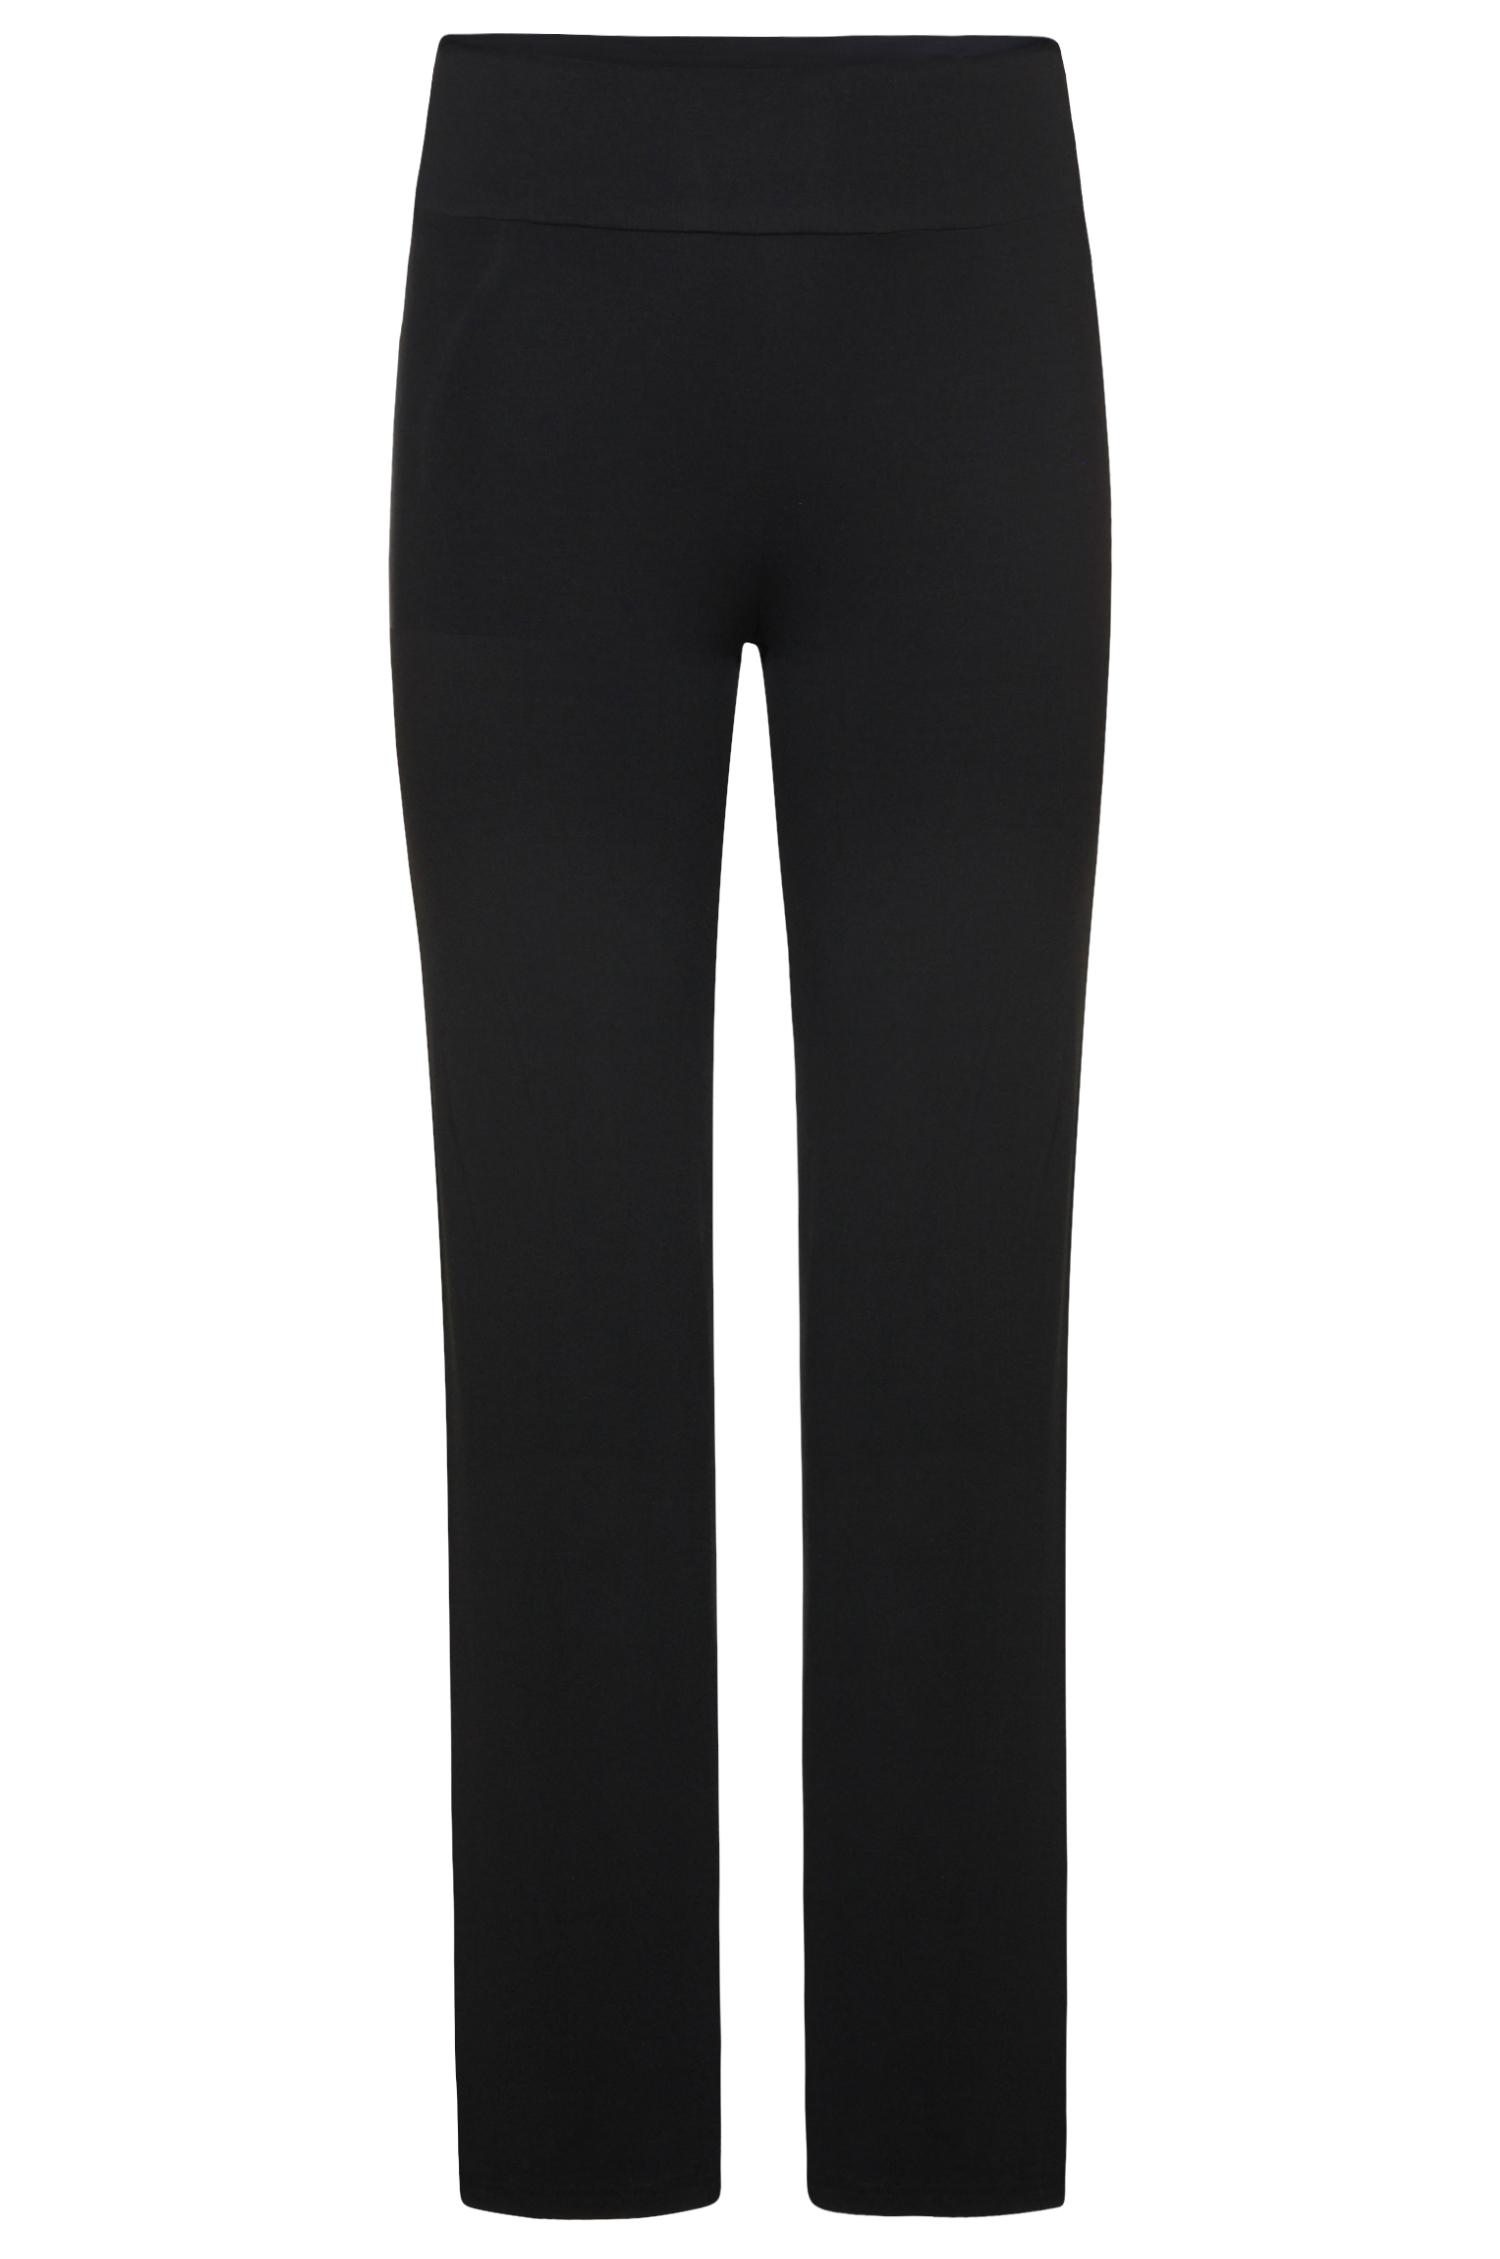 Pantalon noir - 39,95 €